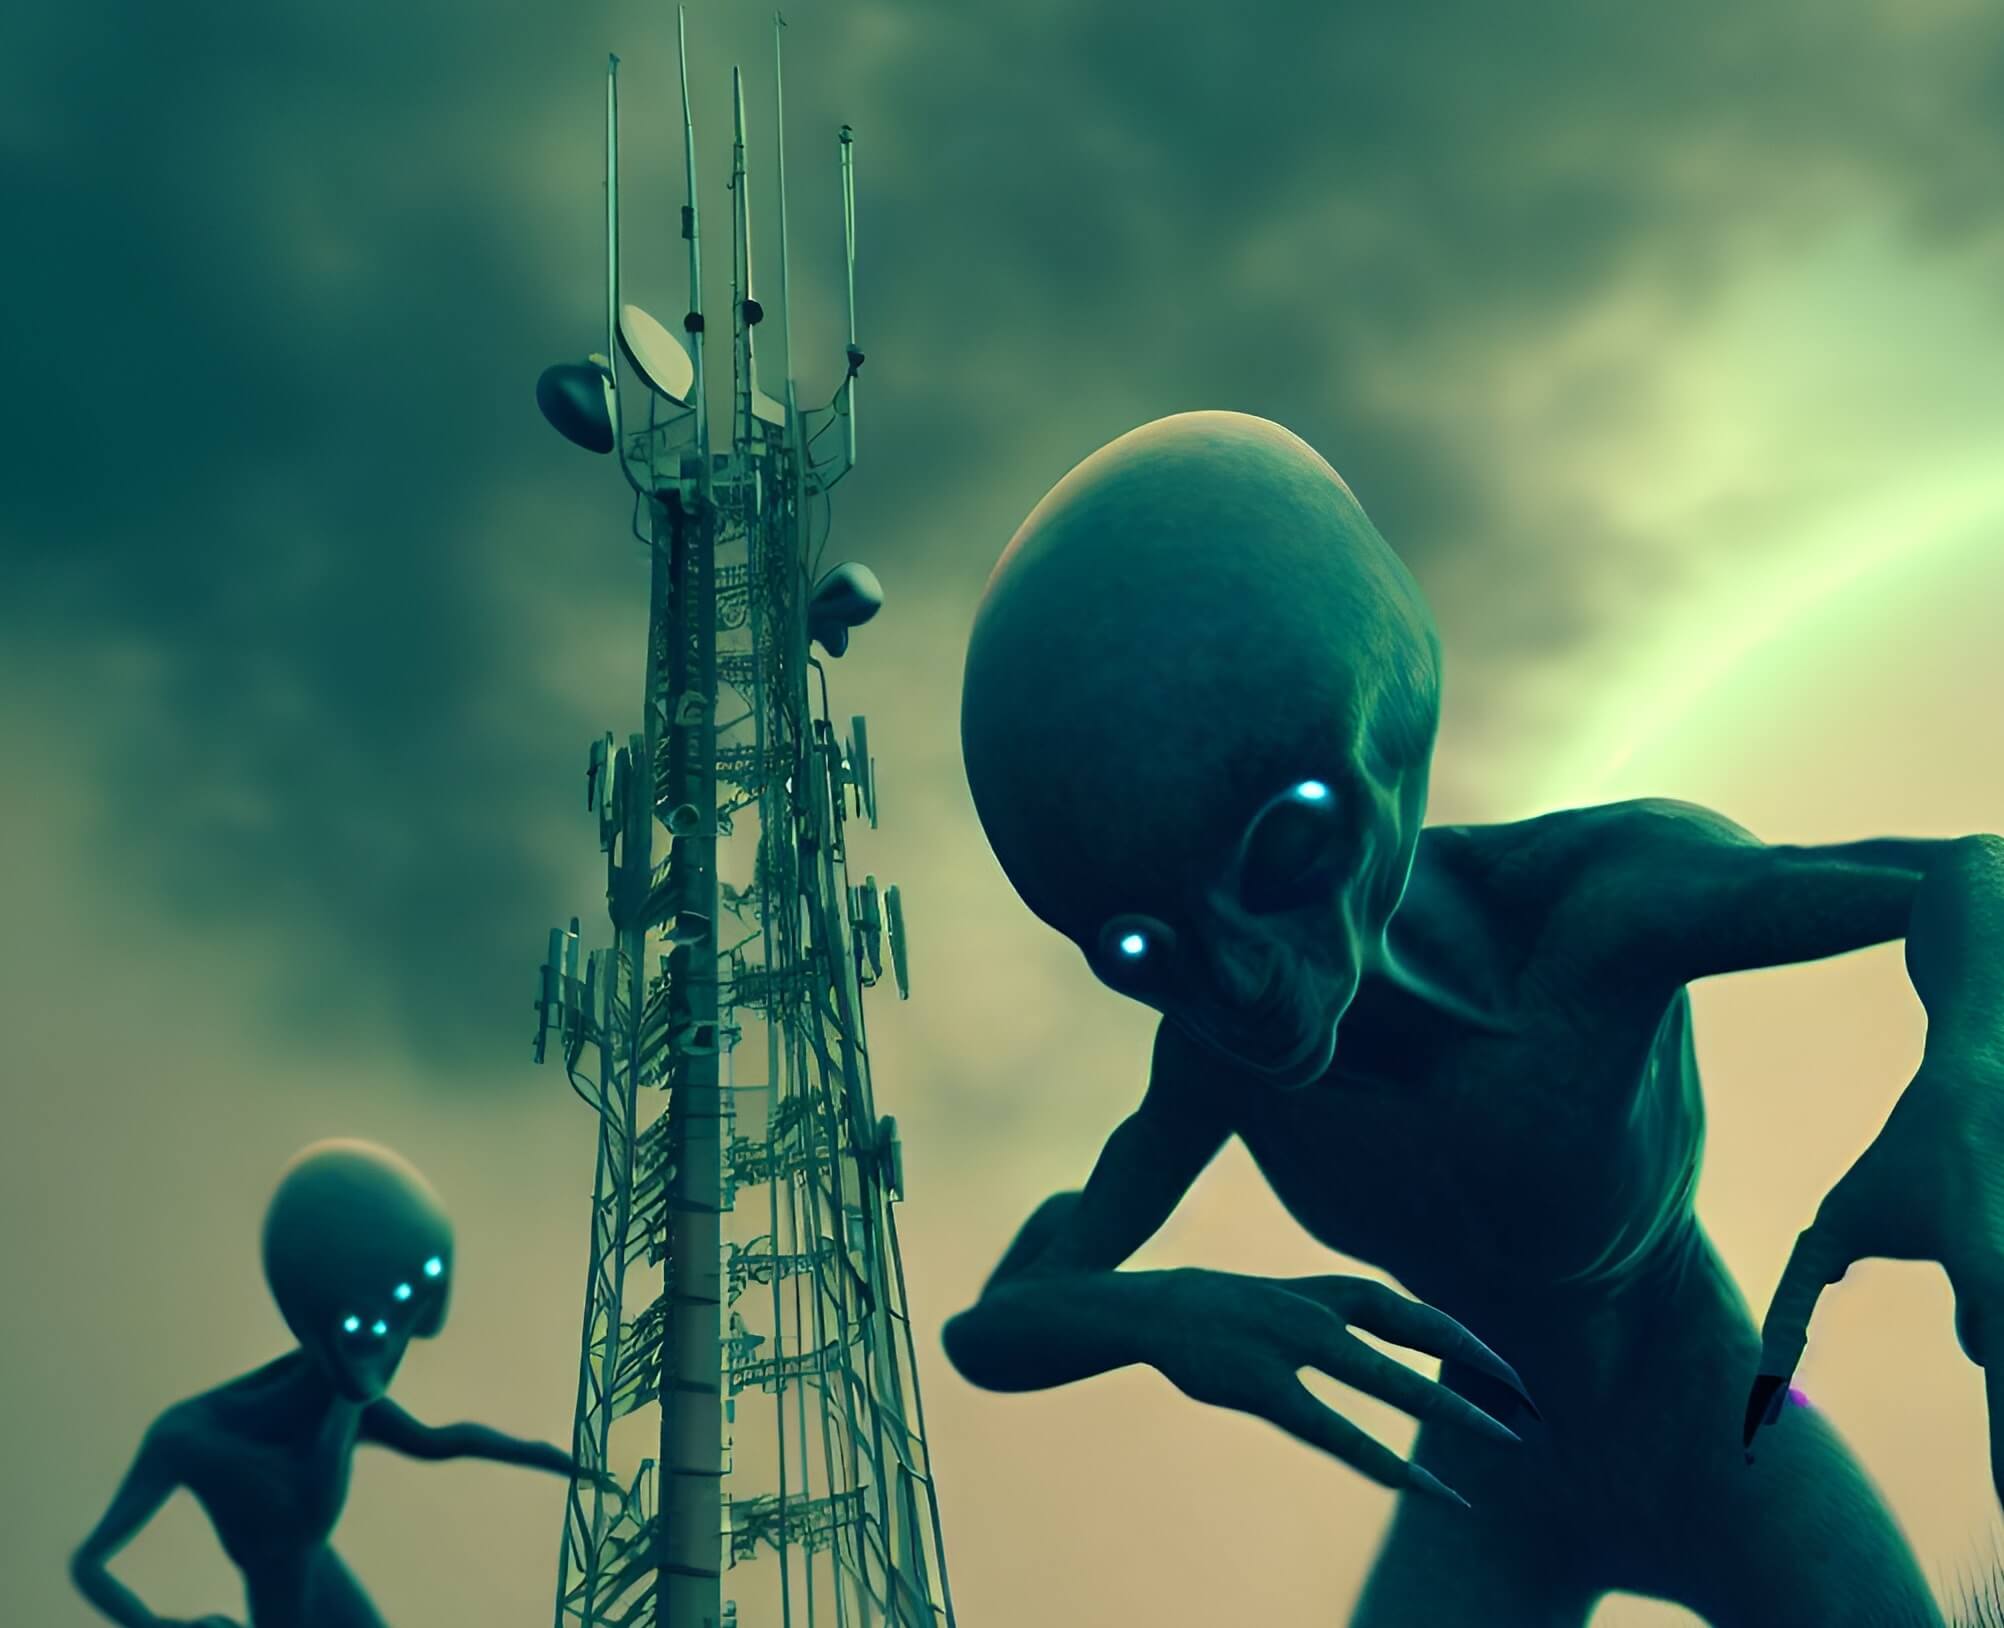 Инопланетяне могут напасть на Землю, увидев вышки мобильной связи. Ученые считают, что вышки мобильной связи могут помочь инопланетянам найти нас и совершить нападение. Фото.